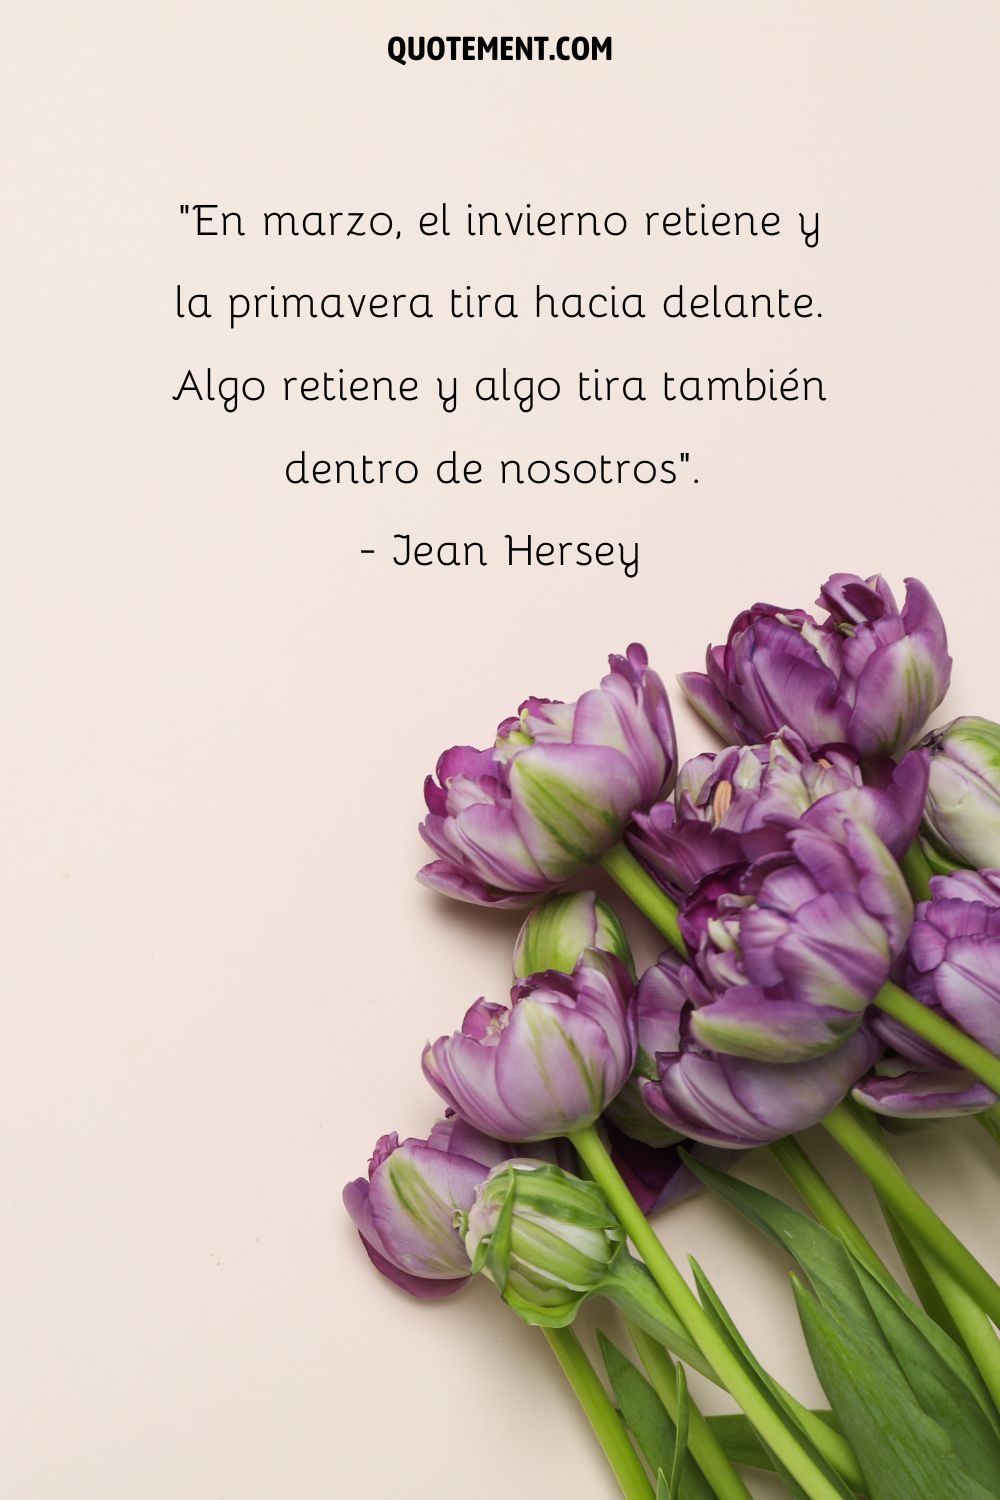 En marzo, el invierno retiene y la primavera tira hacia delante. Algo retiene y algo tira también dentro de nosotros. - Jean Hersey